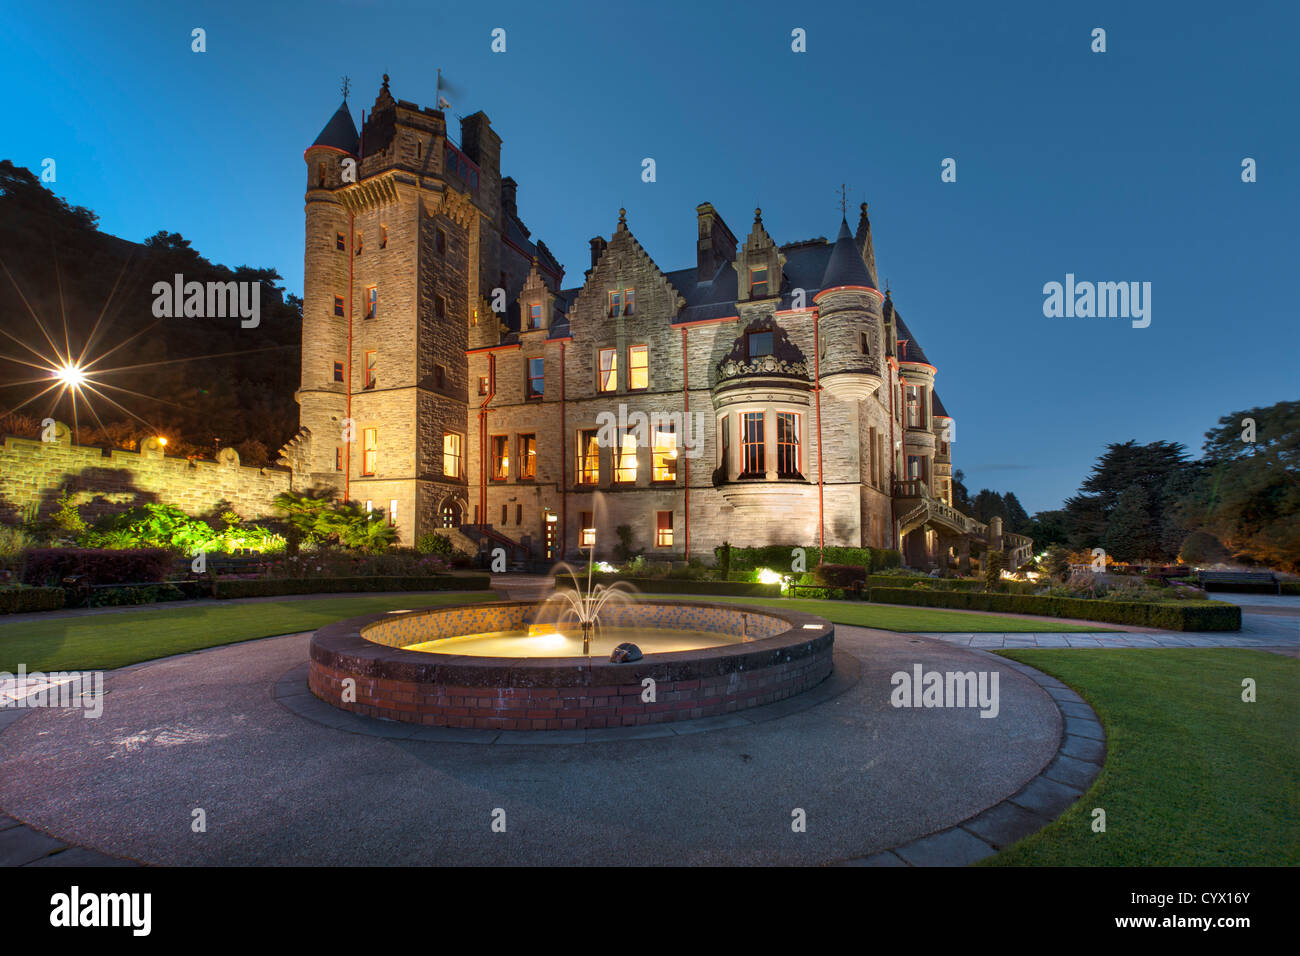 Capture de nuit Château de Belfast, Irlande du Nord. Banque D'Images